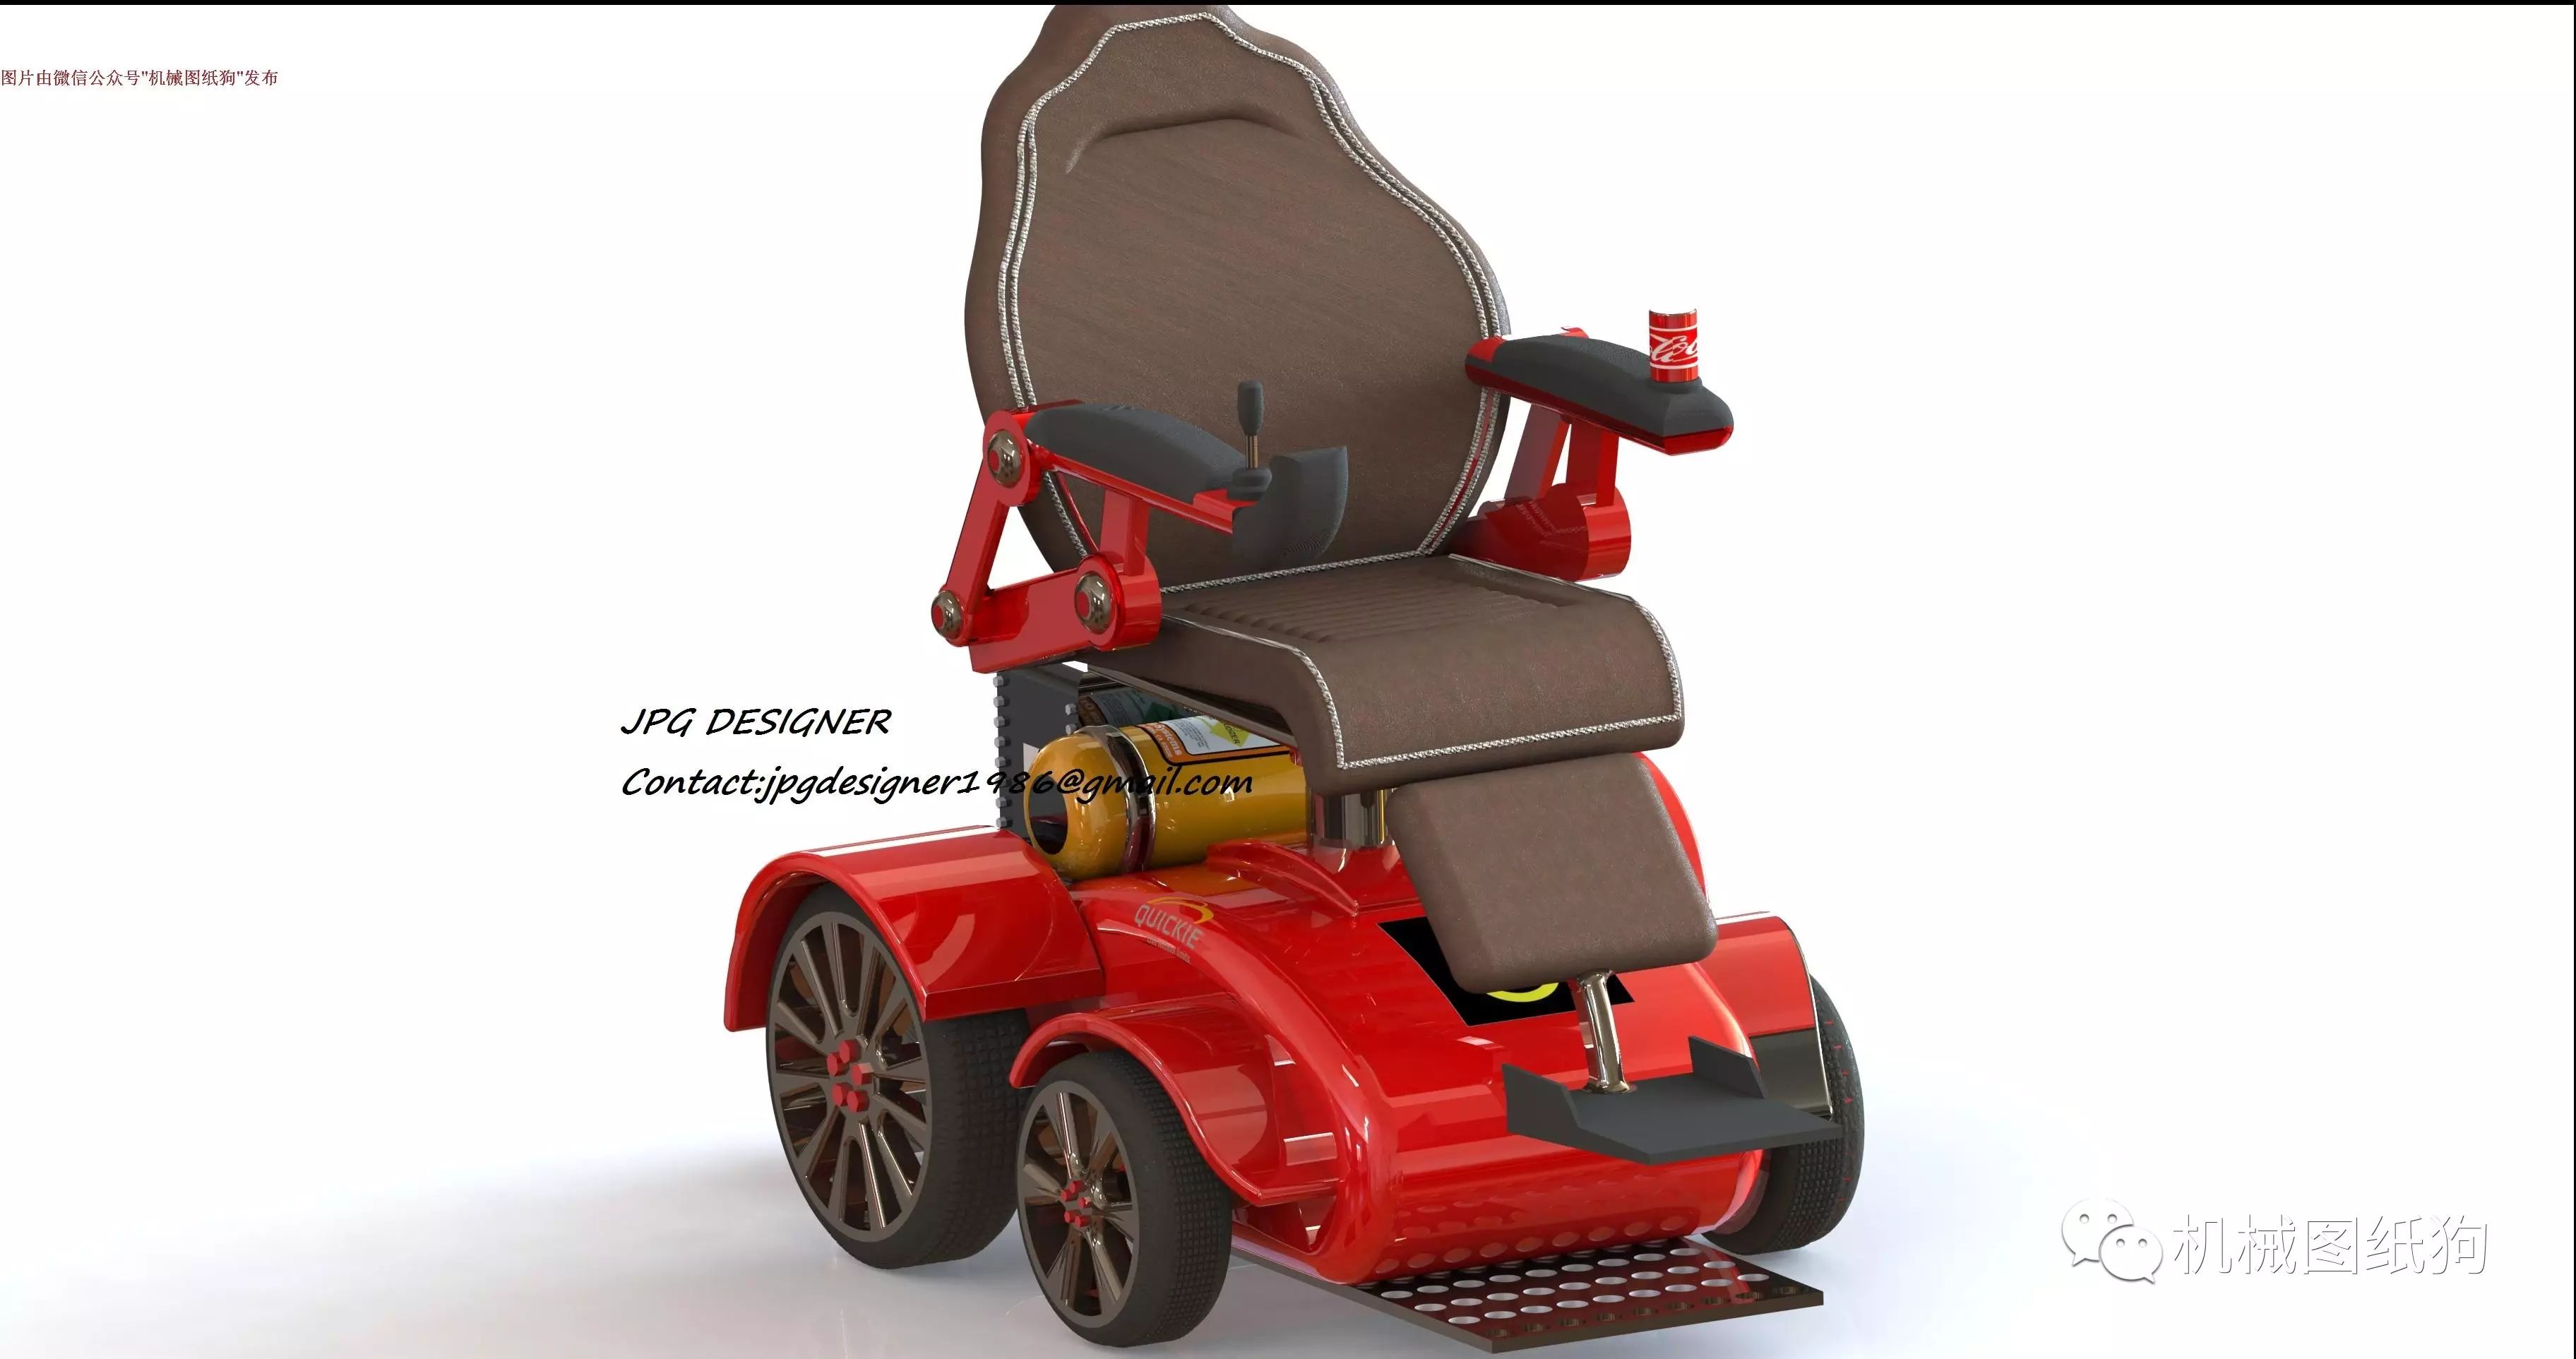 【医疗器械】电动遥控轮椅造型三维建模图纸 SOLIDWORKS设计